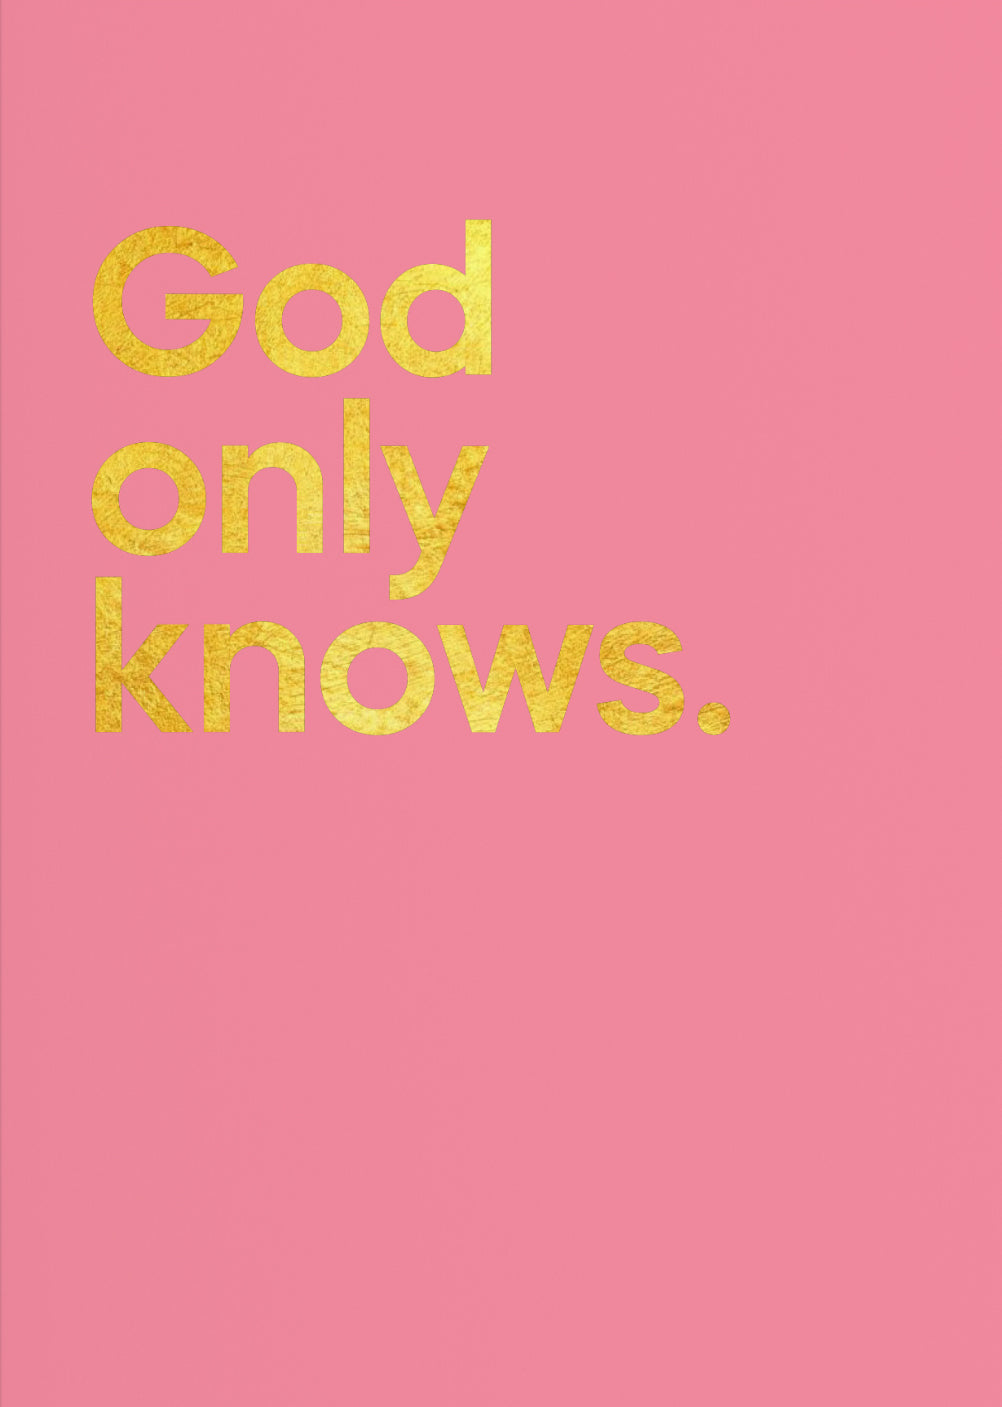 God Only Knows – The Beach Boys | Card